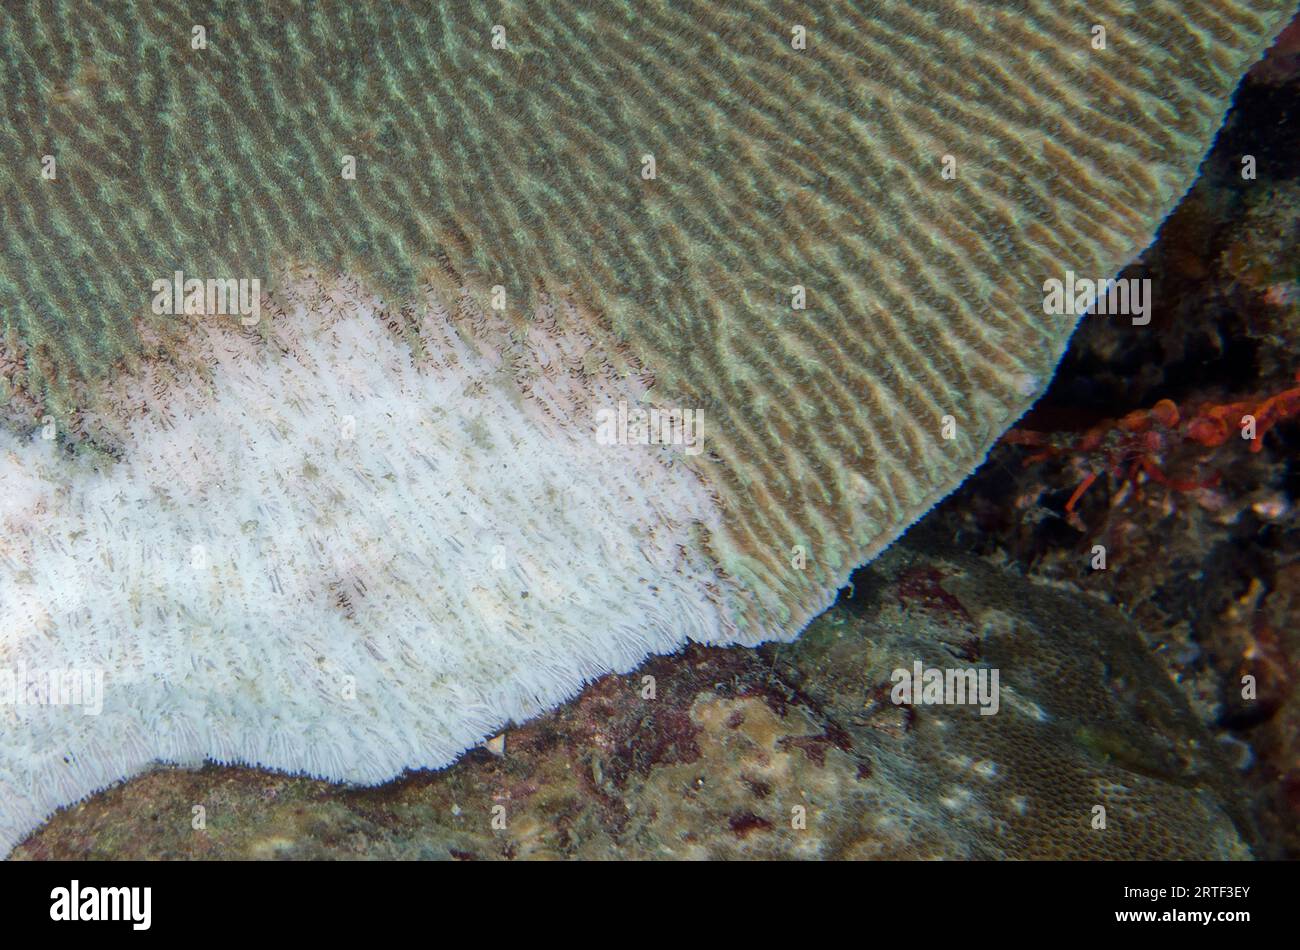 Corallo, Acropora sp, con danni probabili dalla malattia della banda Bianca, sito di immersione del Tempio sottomarino, Pemuteran, Buleleng Regency, Bali, Indonesia Foto Stock